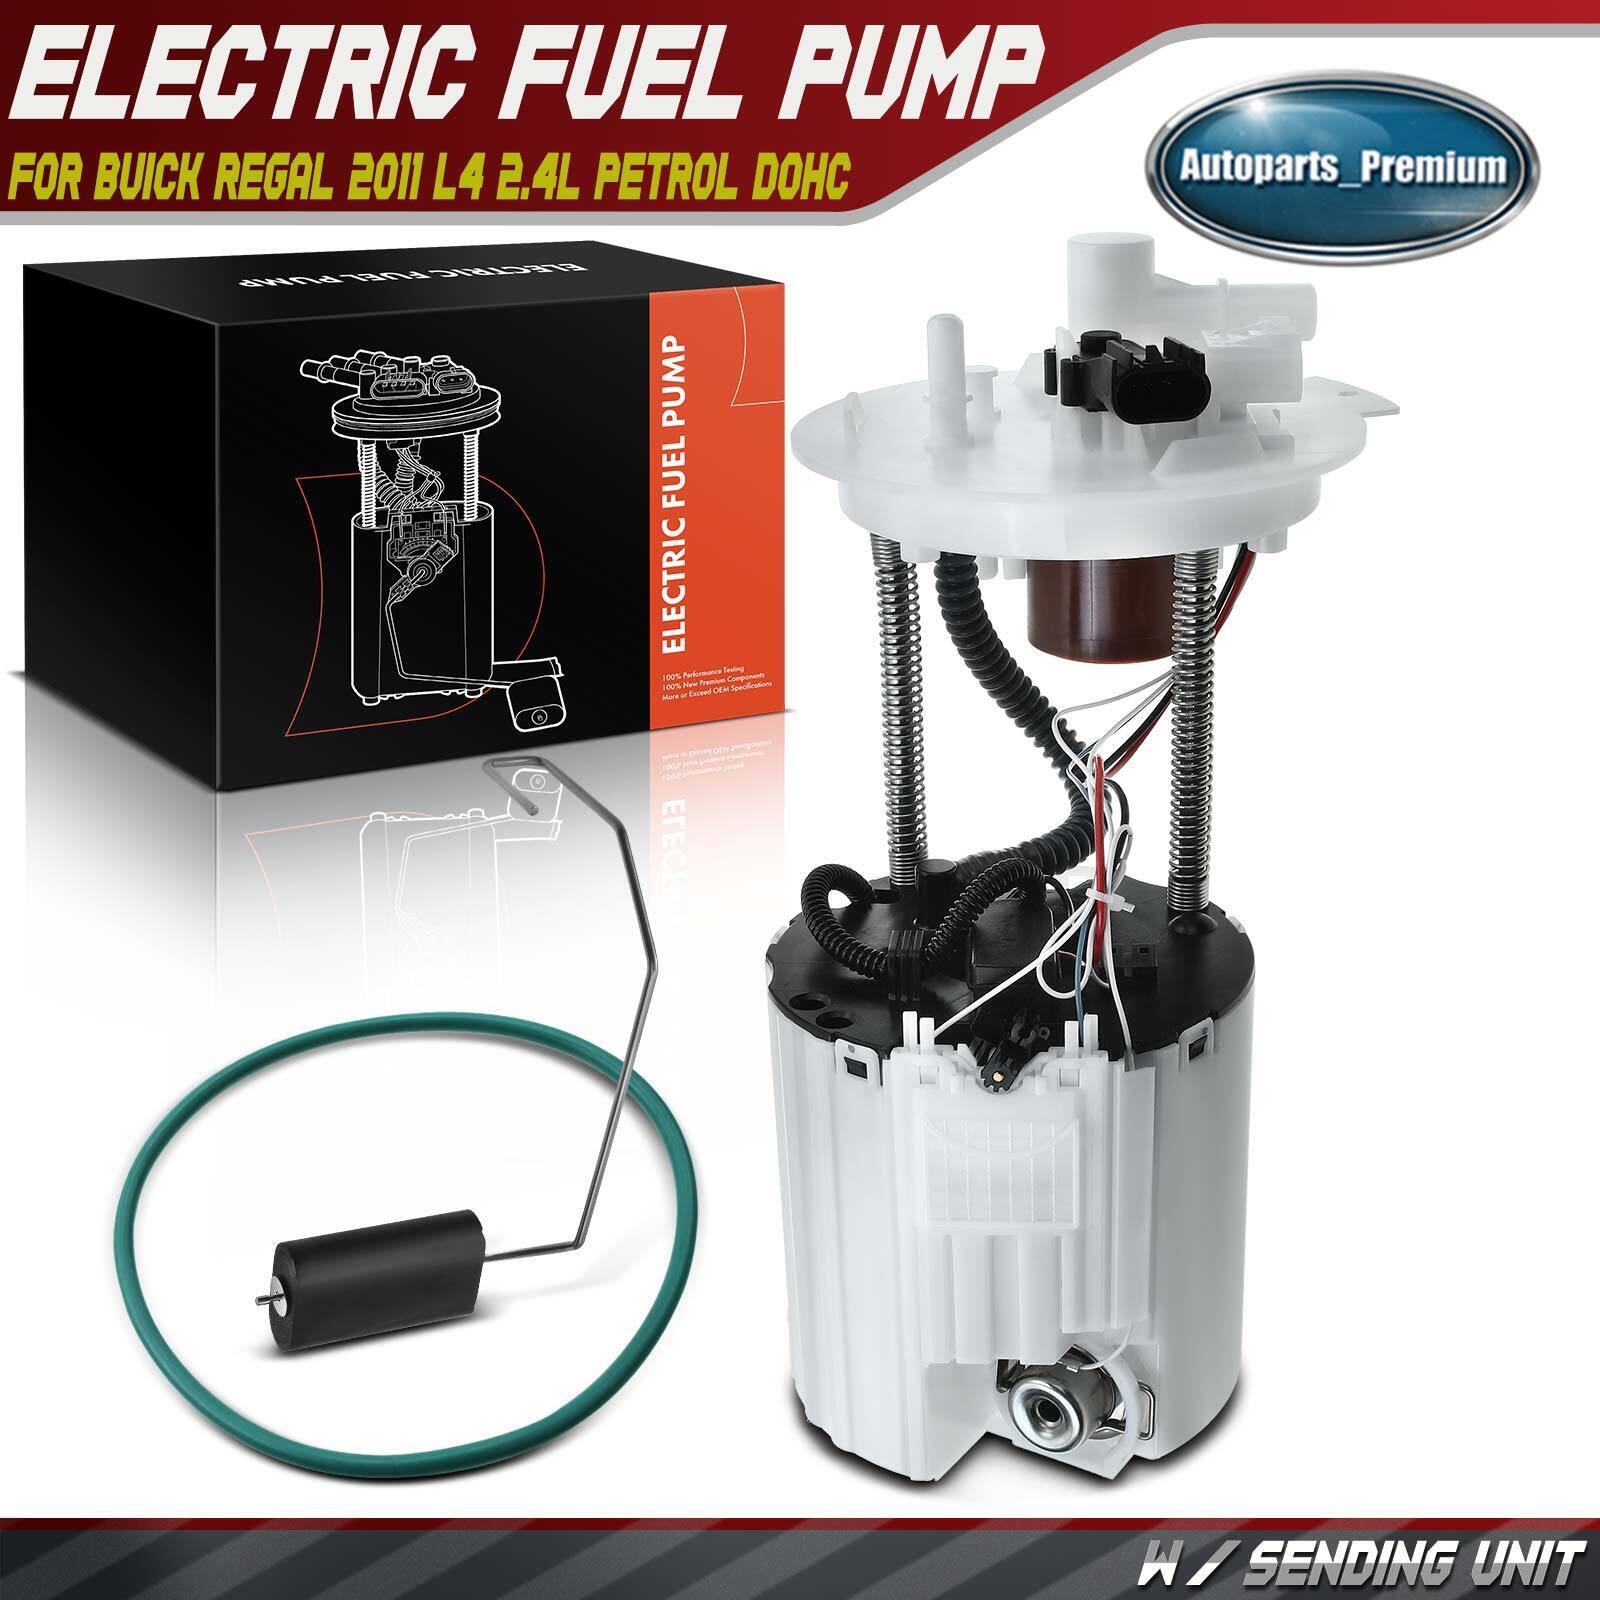 Fuel Pump Assembly for Buick Regal 2011 L4 2.4L Petrol DOHC 13580408 13578363